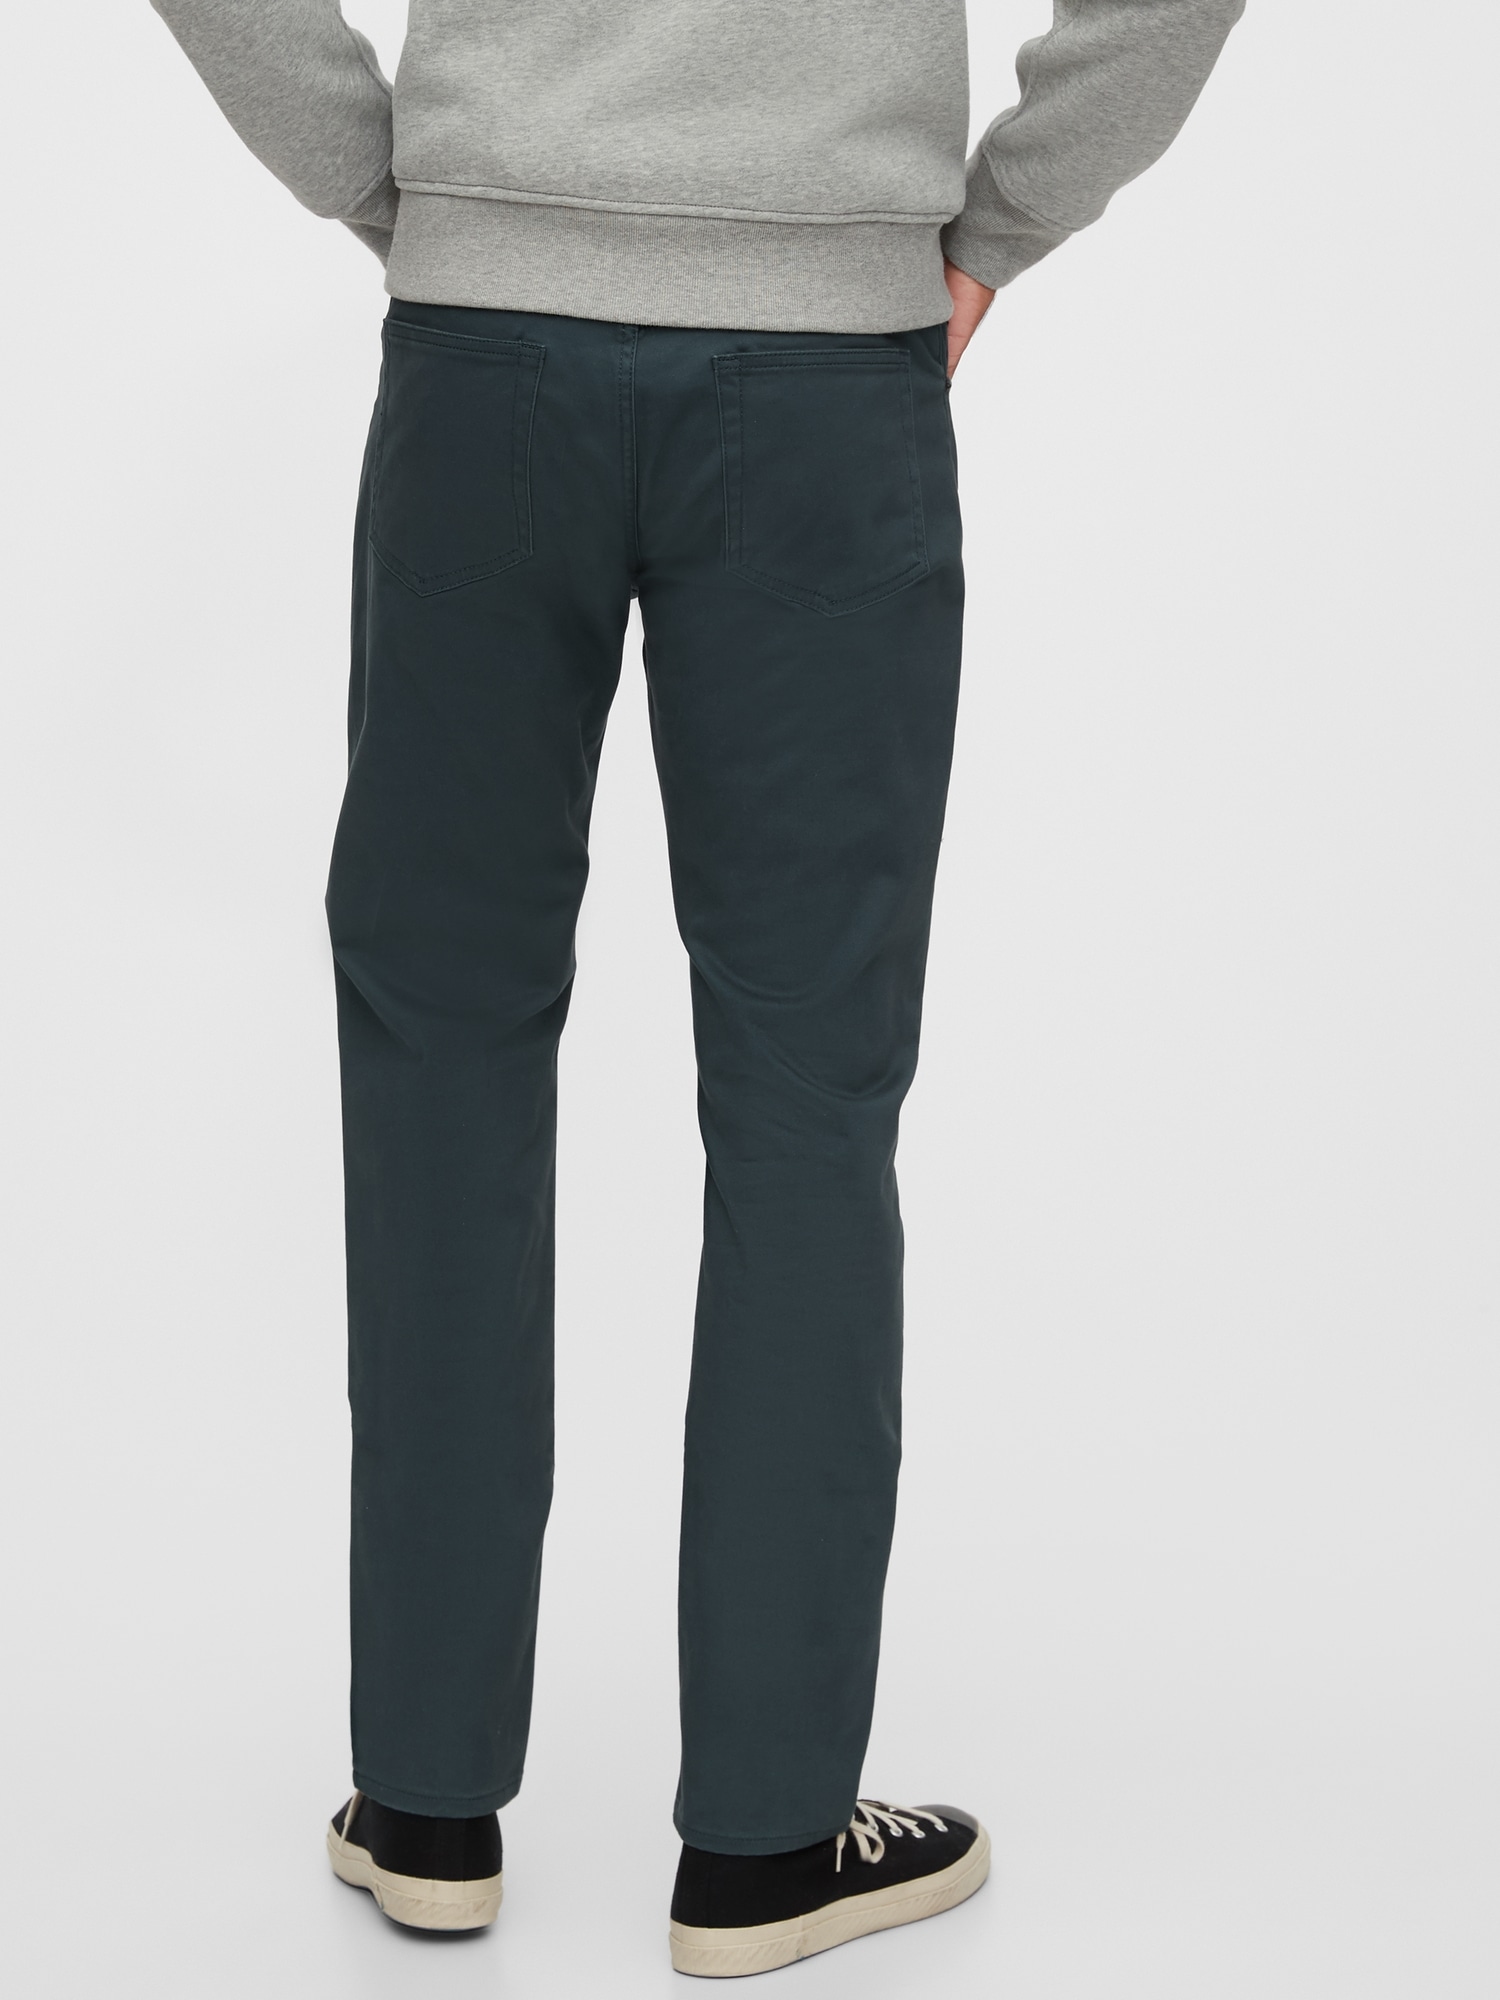 Soft Wear Slim Jeans with GapFlex